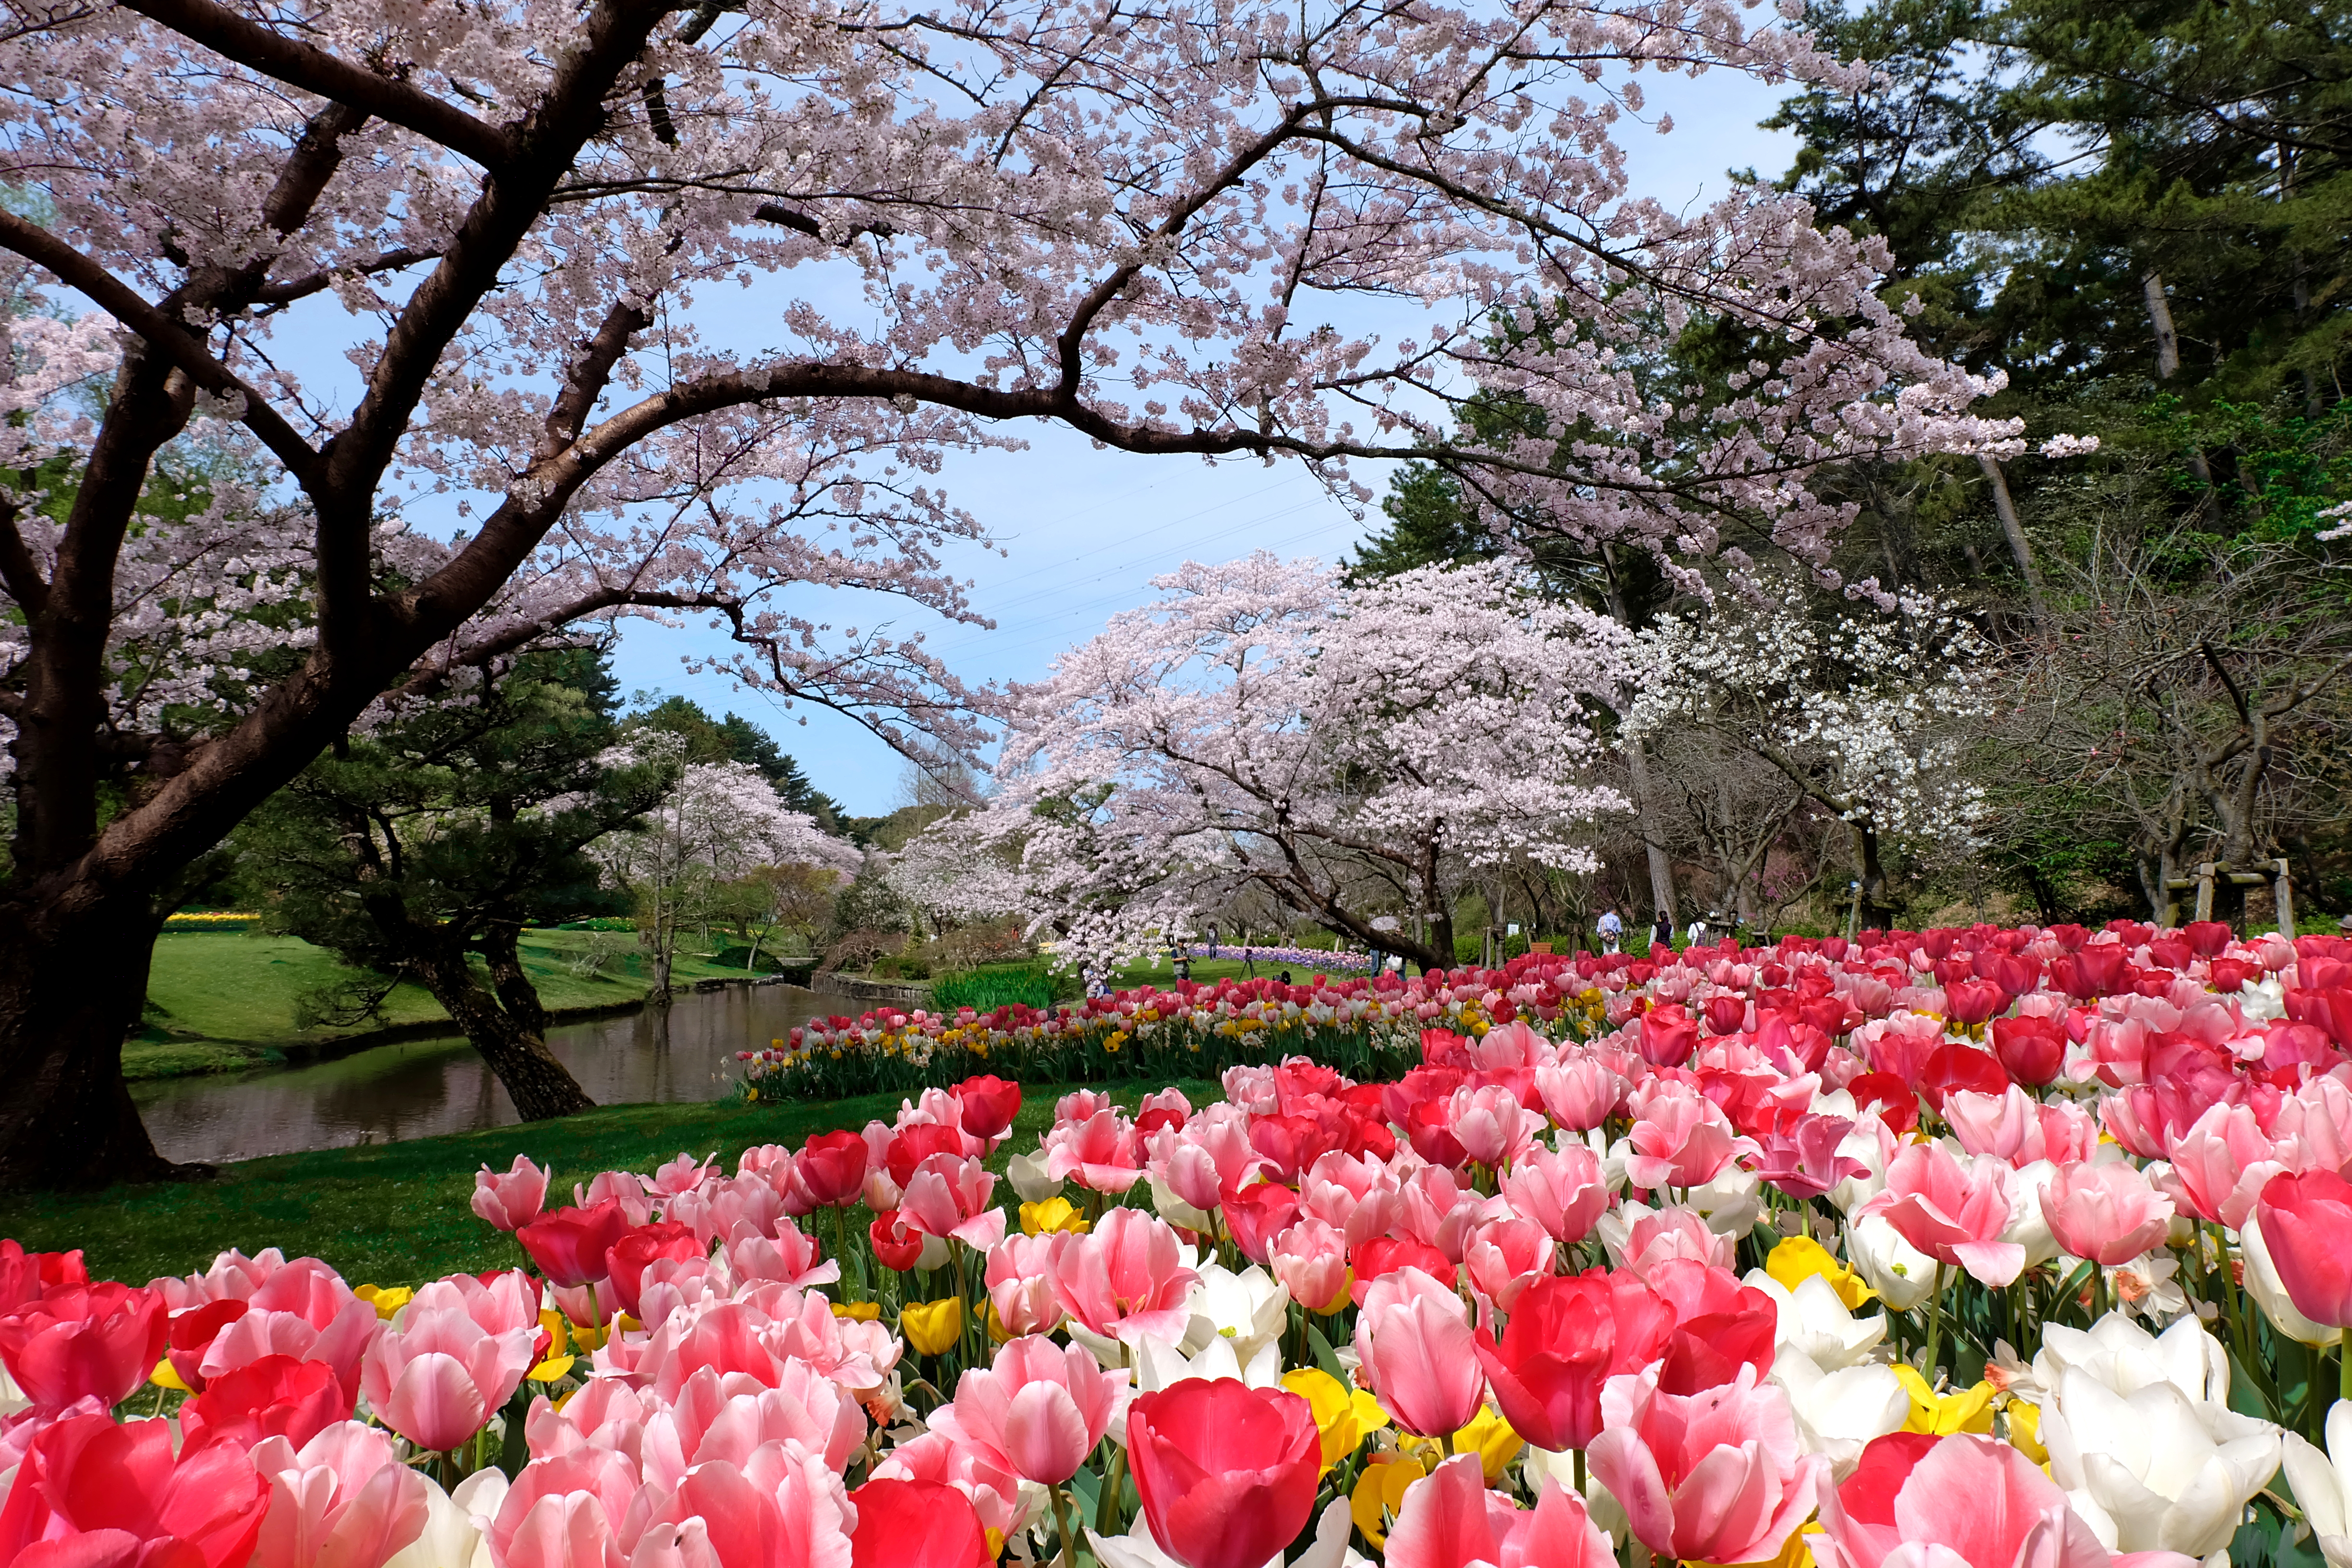 浜名湖花フェスタ21開催 街中で季節の花がお出迎え レイクタウンを彩る春の祭典へ出かけよう Nagoya ナゴヤドット